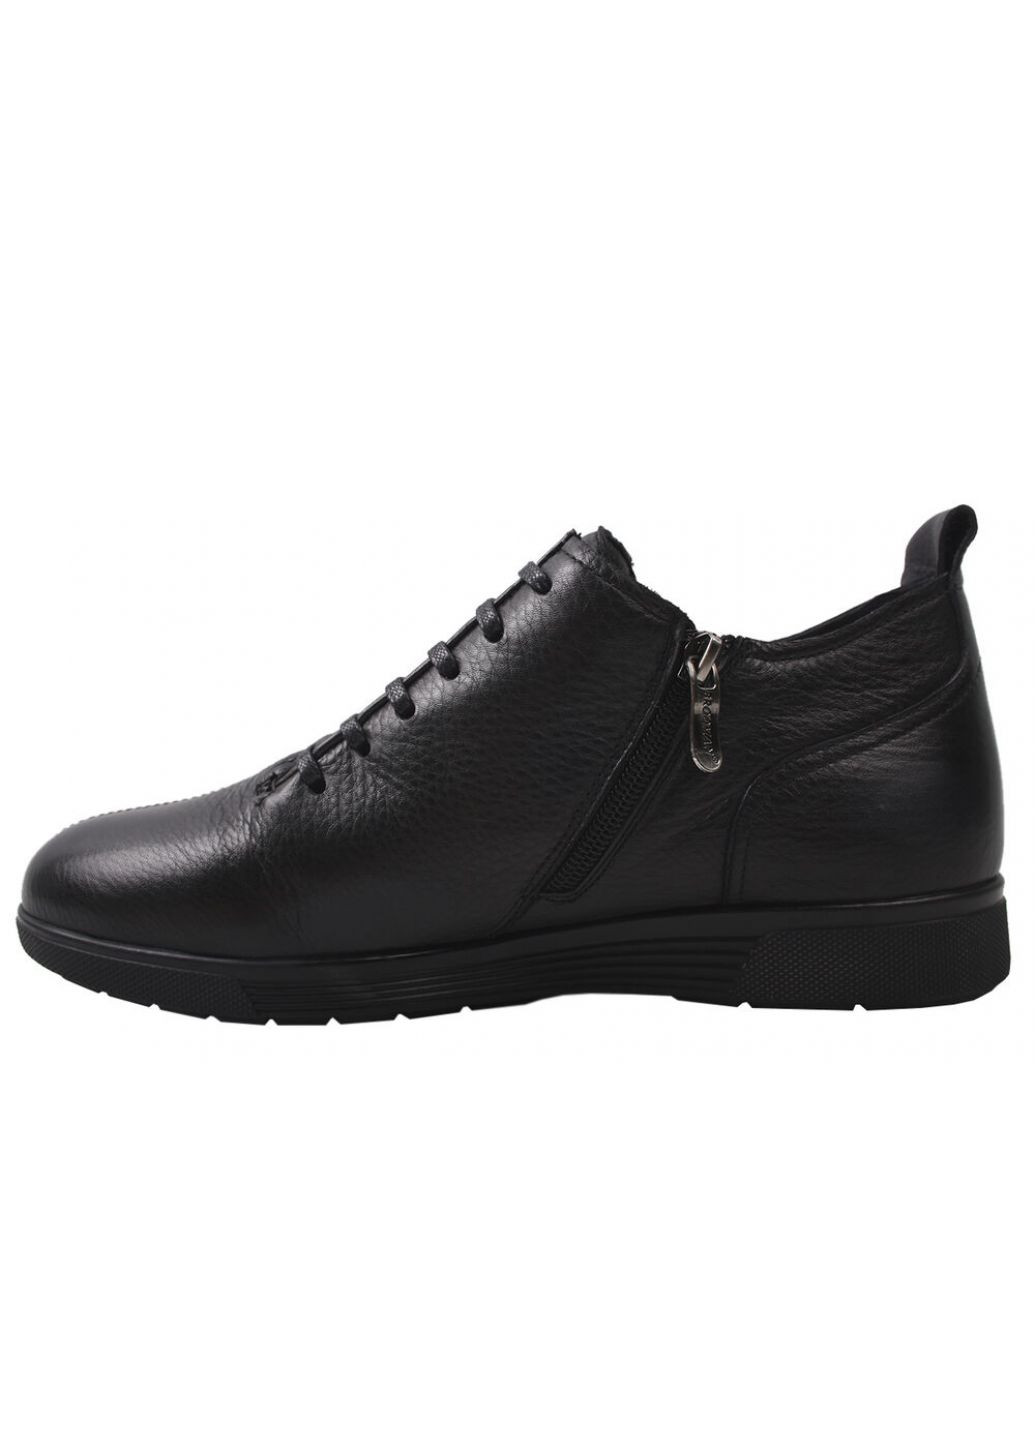 Черные ботинки мужские из натуральной кожи, на низком ходу, на шнуровке, черные, Brooman